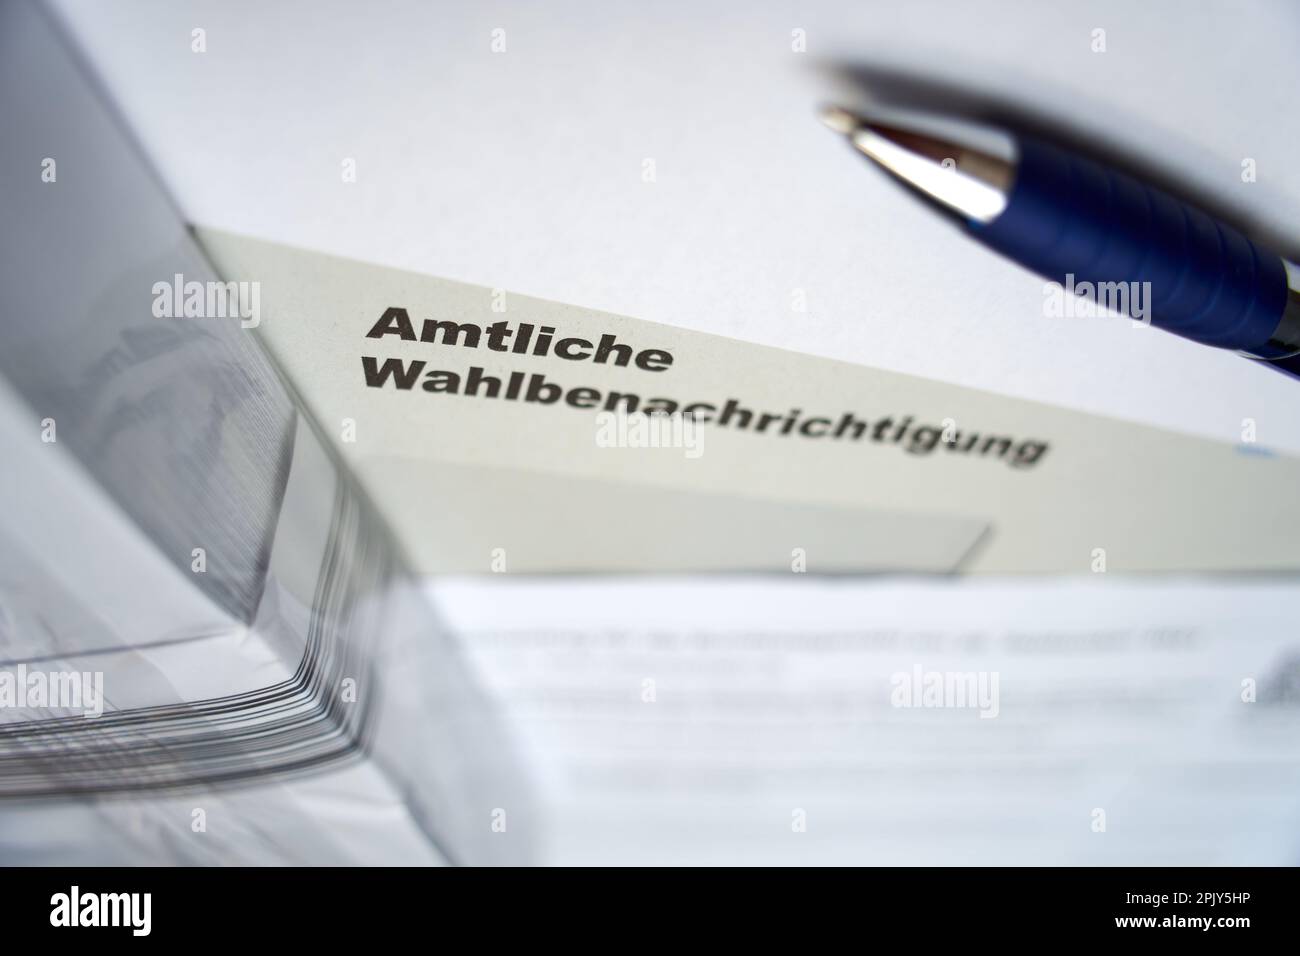 Stuttgart, Allemagne - 28 août 2021: Notification officielle des élections (Wahlbenachrichtigung Bundestag) pour l'élection fédérale en allemagne. Multip Banque D'Images